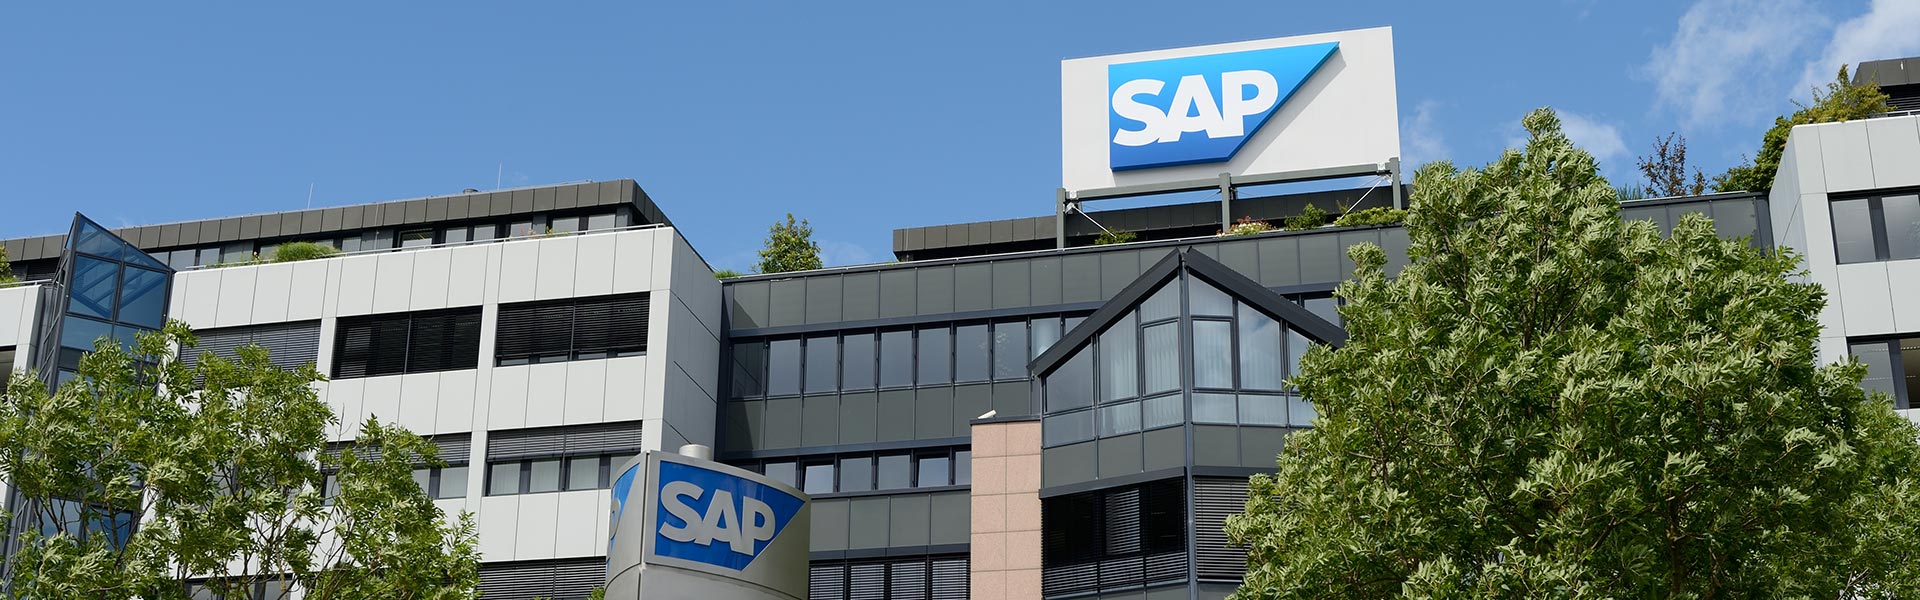 SAP Customer Experience: assicurare la crescita con soluzioni intelligenti su misura per settore